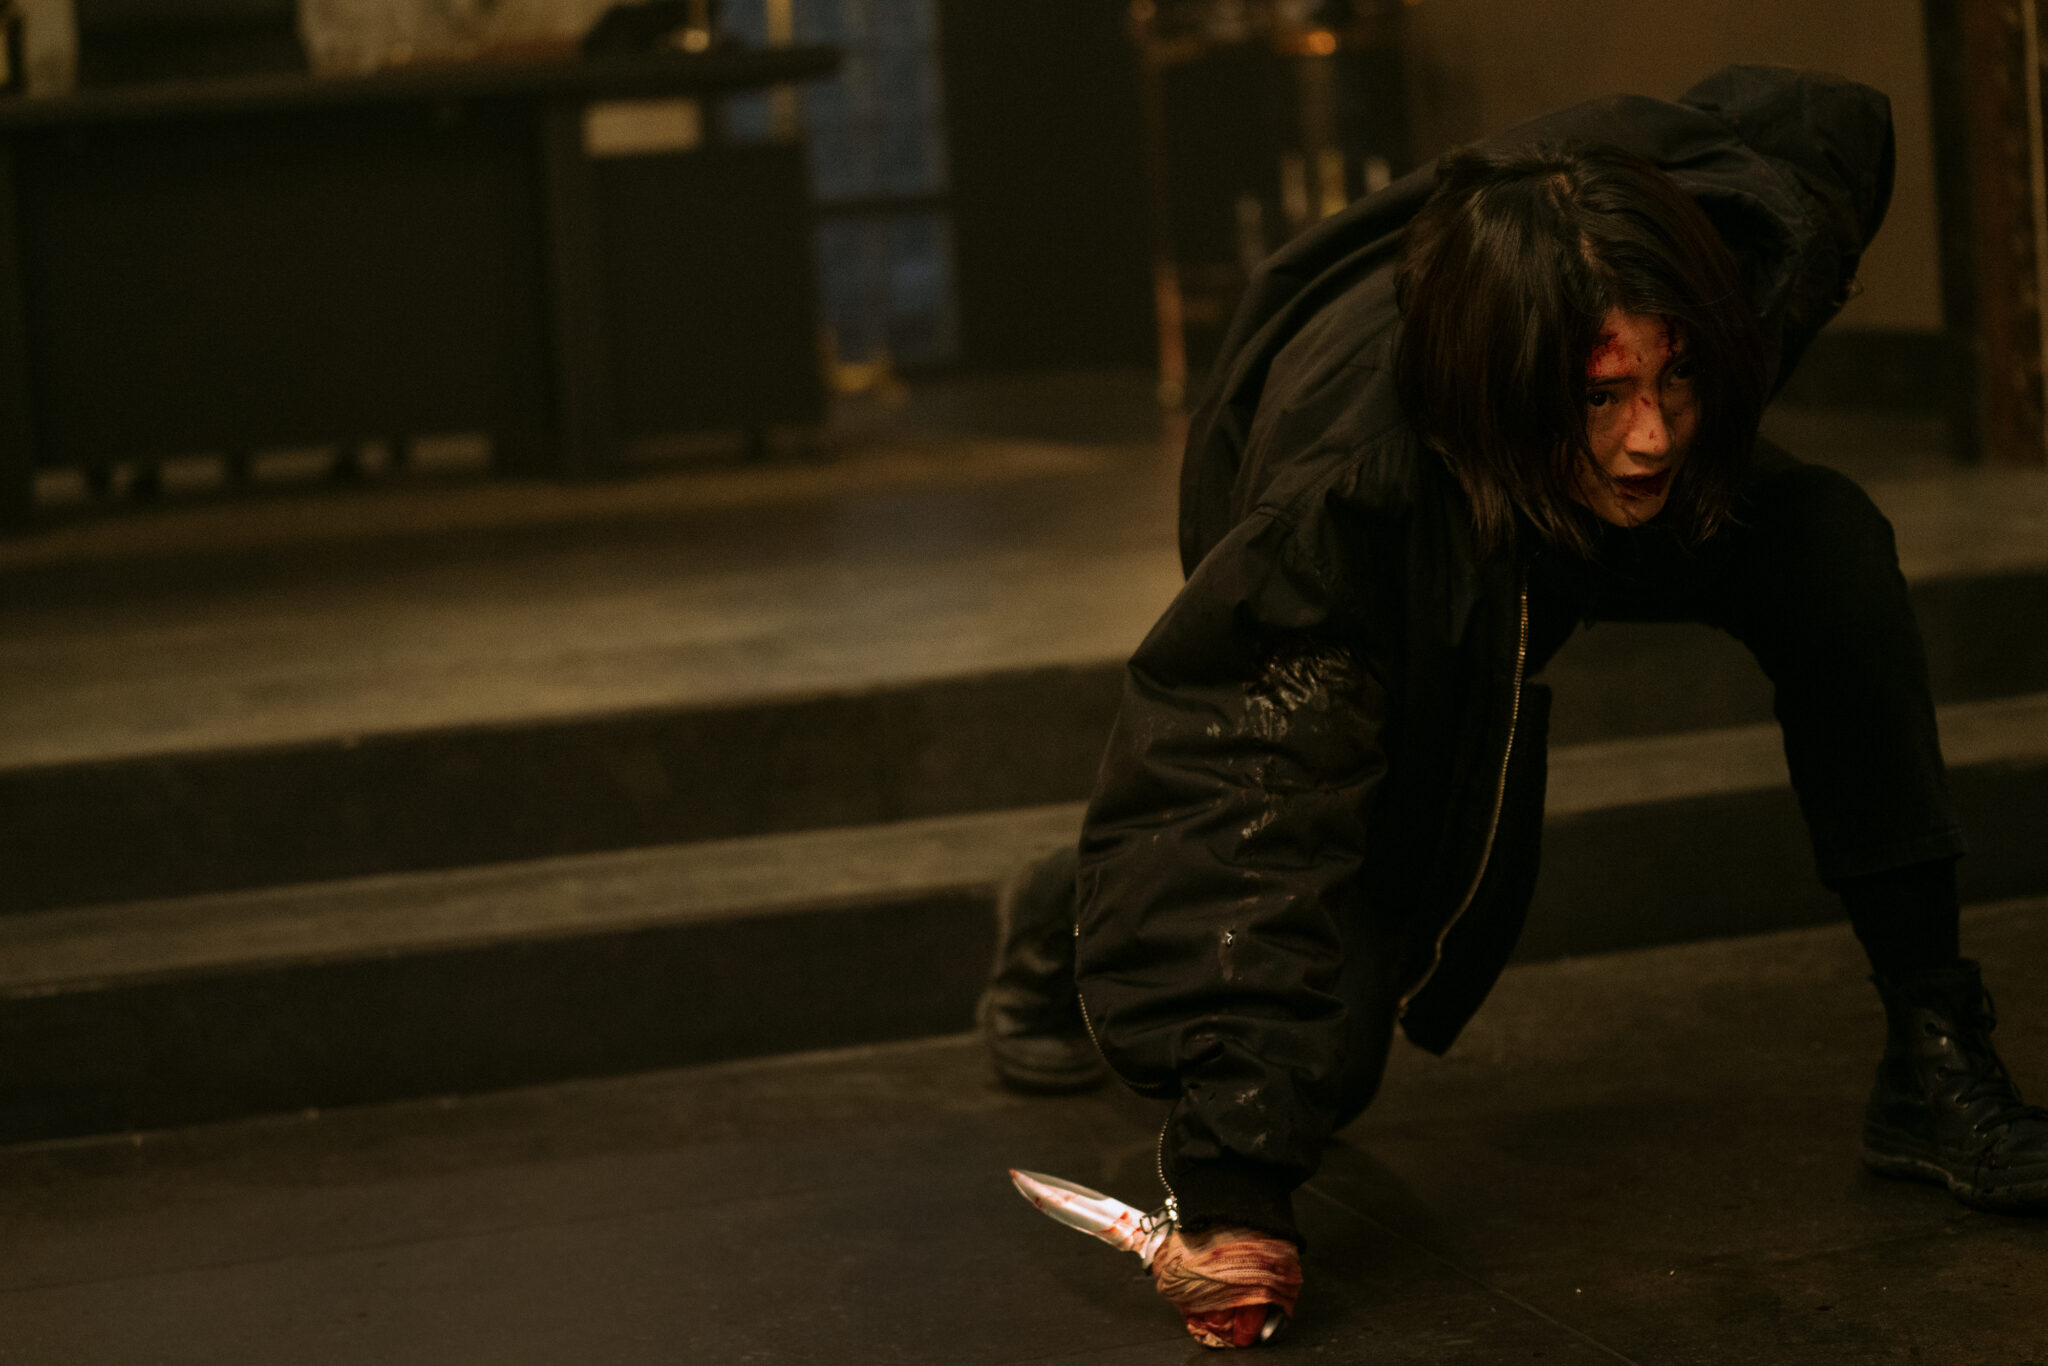 Ein junges Mädchen in gebückter, kampfbereiter Haltung in schwarzem Outfit vor einer Treppe. Sie hat ein blutiges Messer in der Hand.